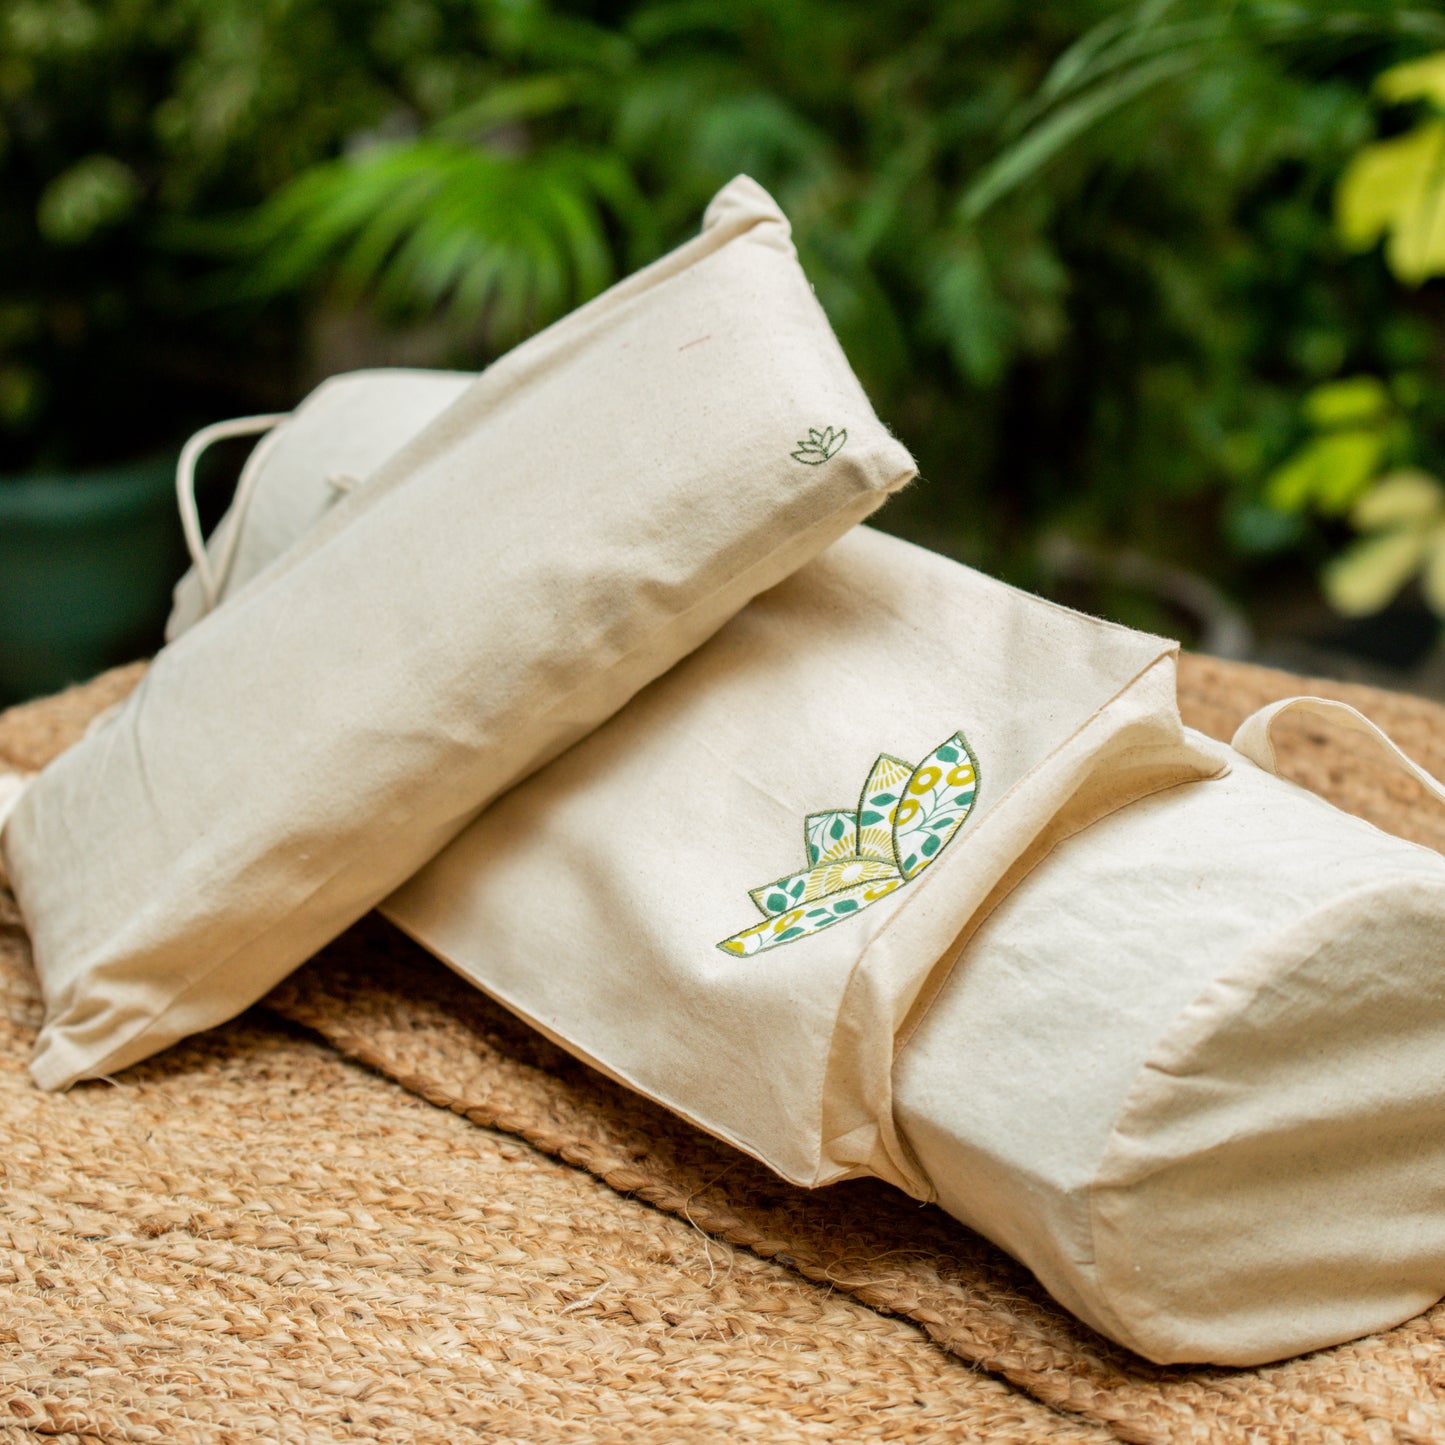 Dhyana yoga bag & cushion set